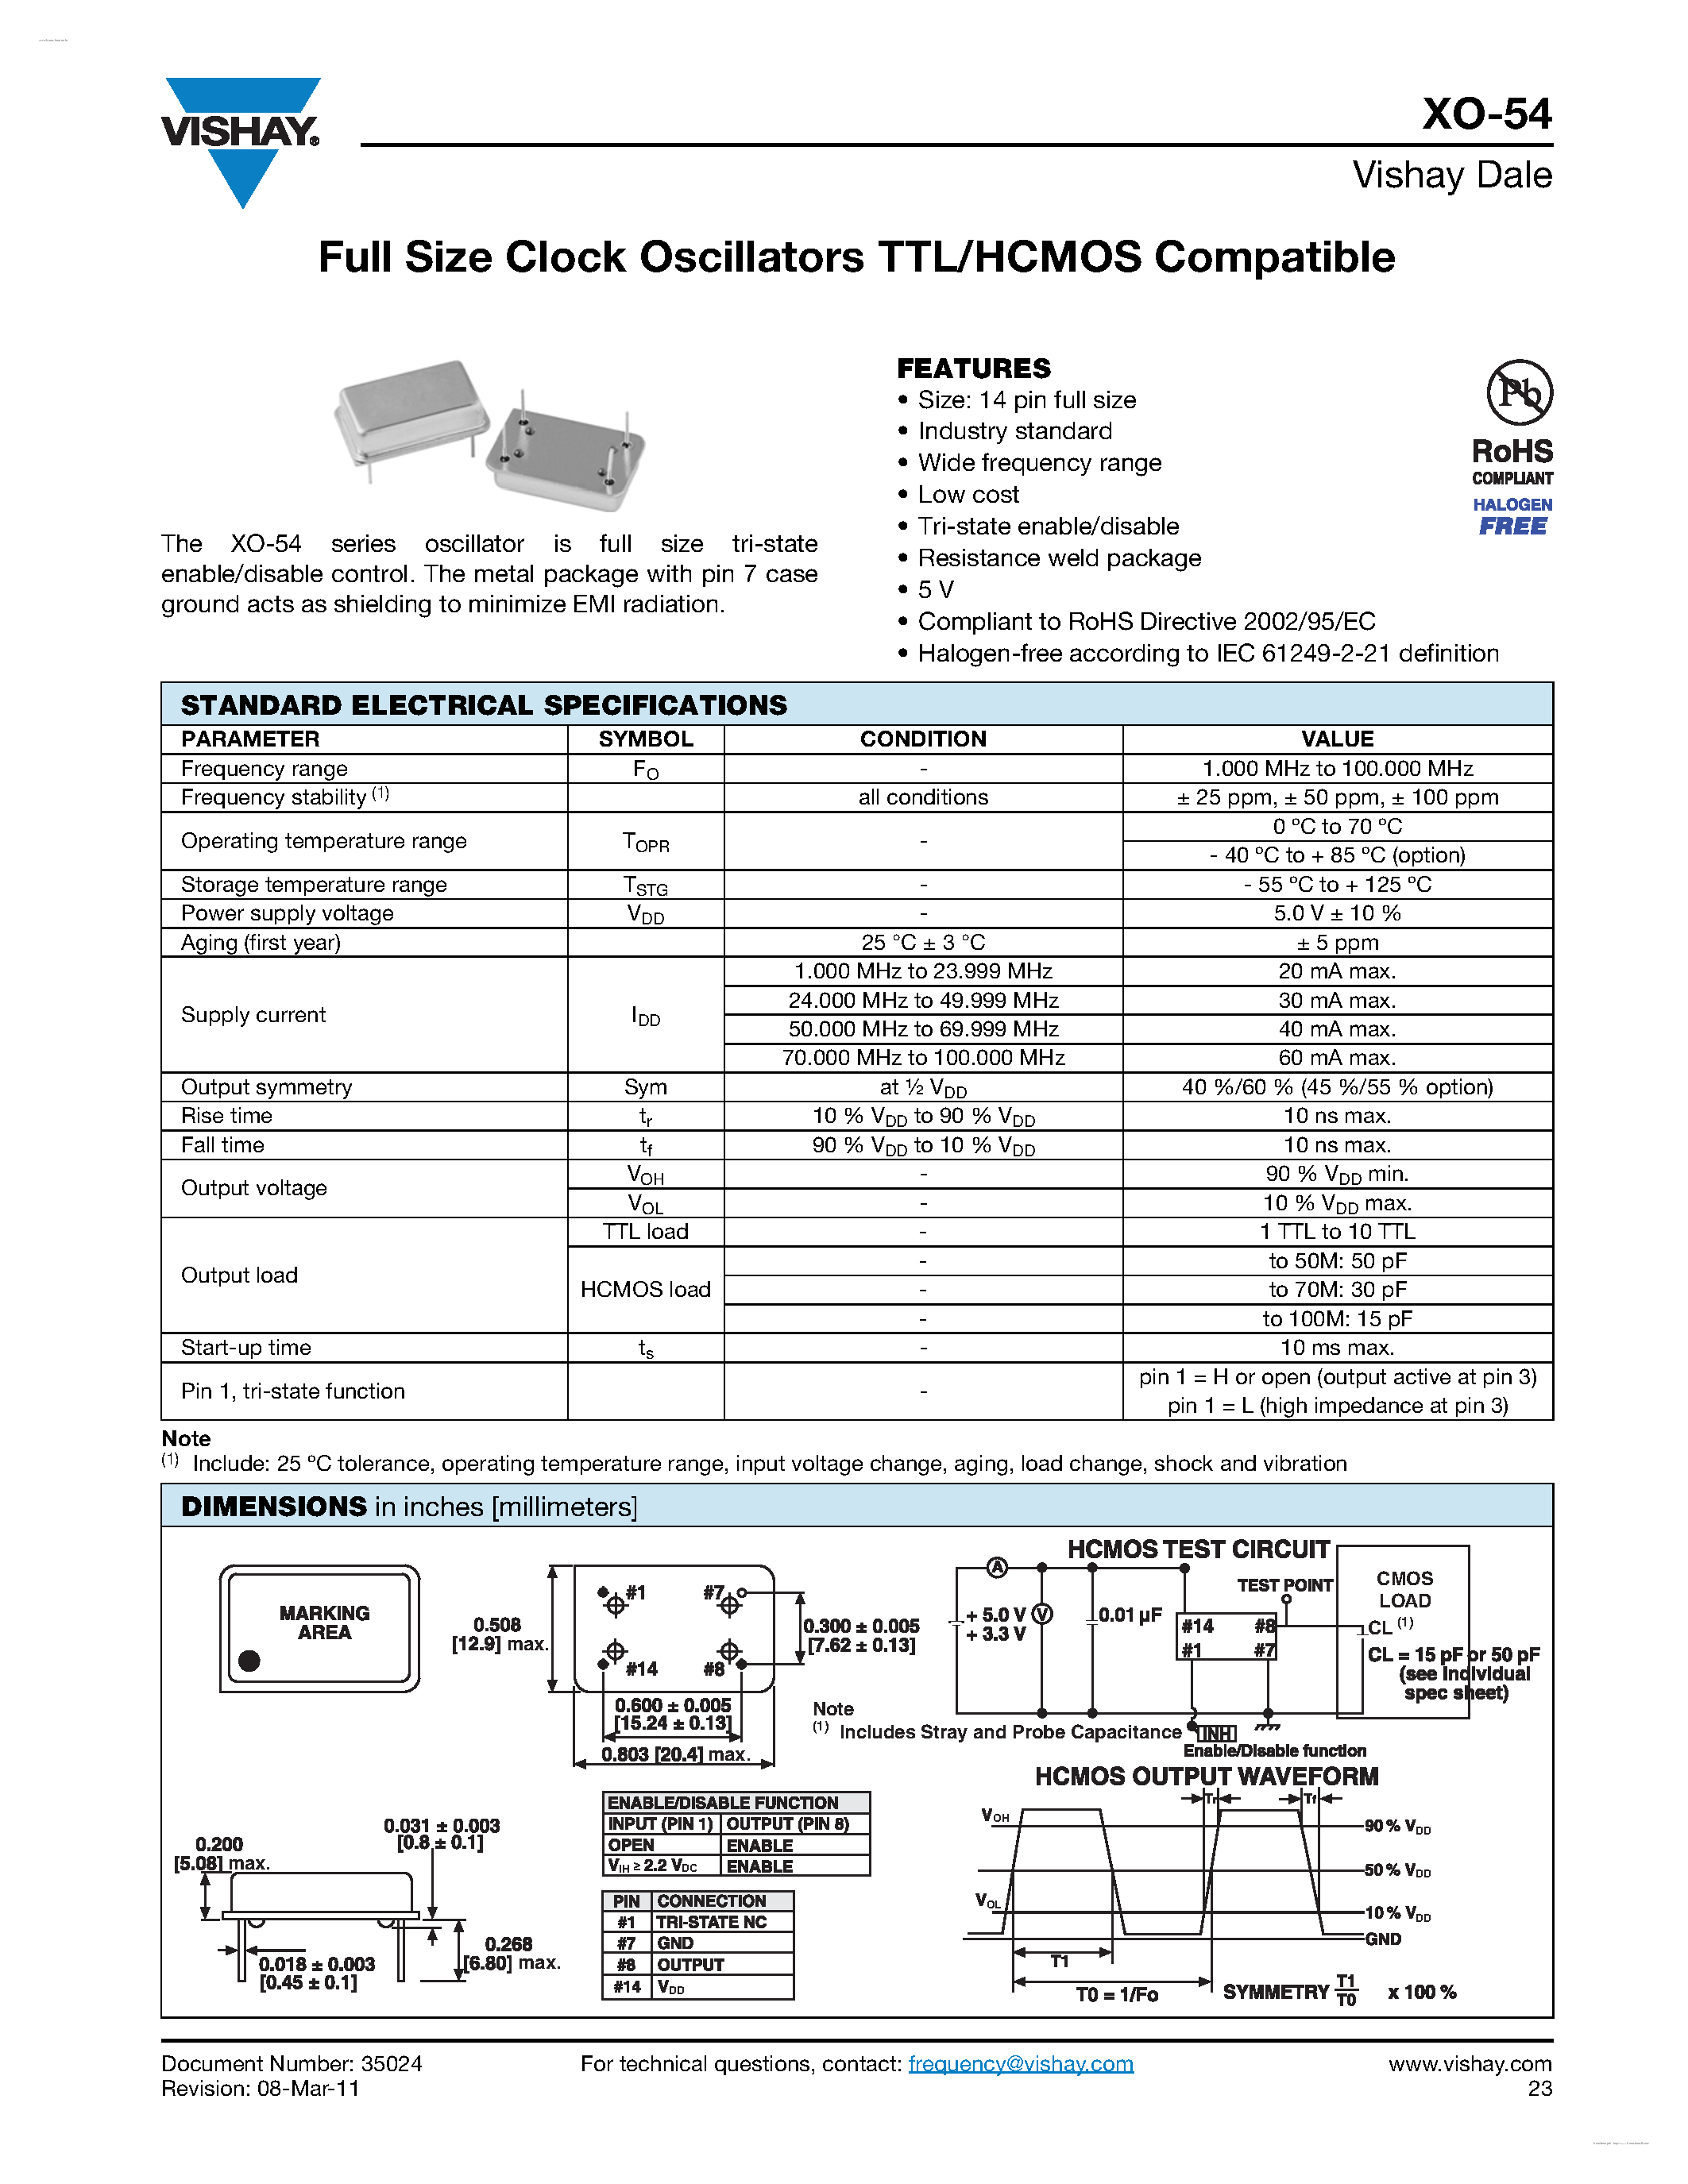 Даташит XO-54 - Full Size Clock Oscillators TTL/HCMOS Compatible страница 1